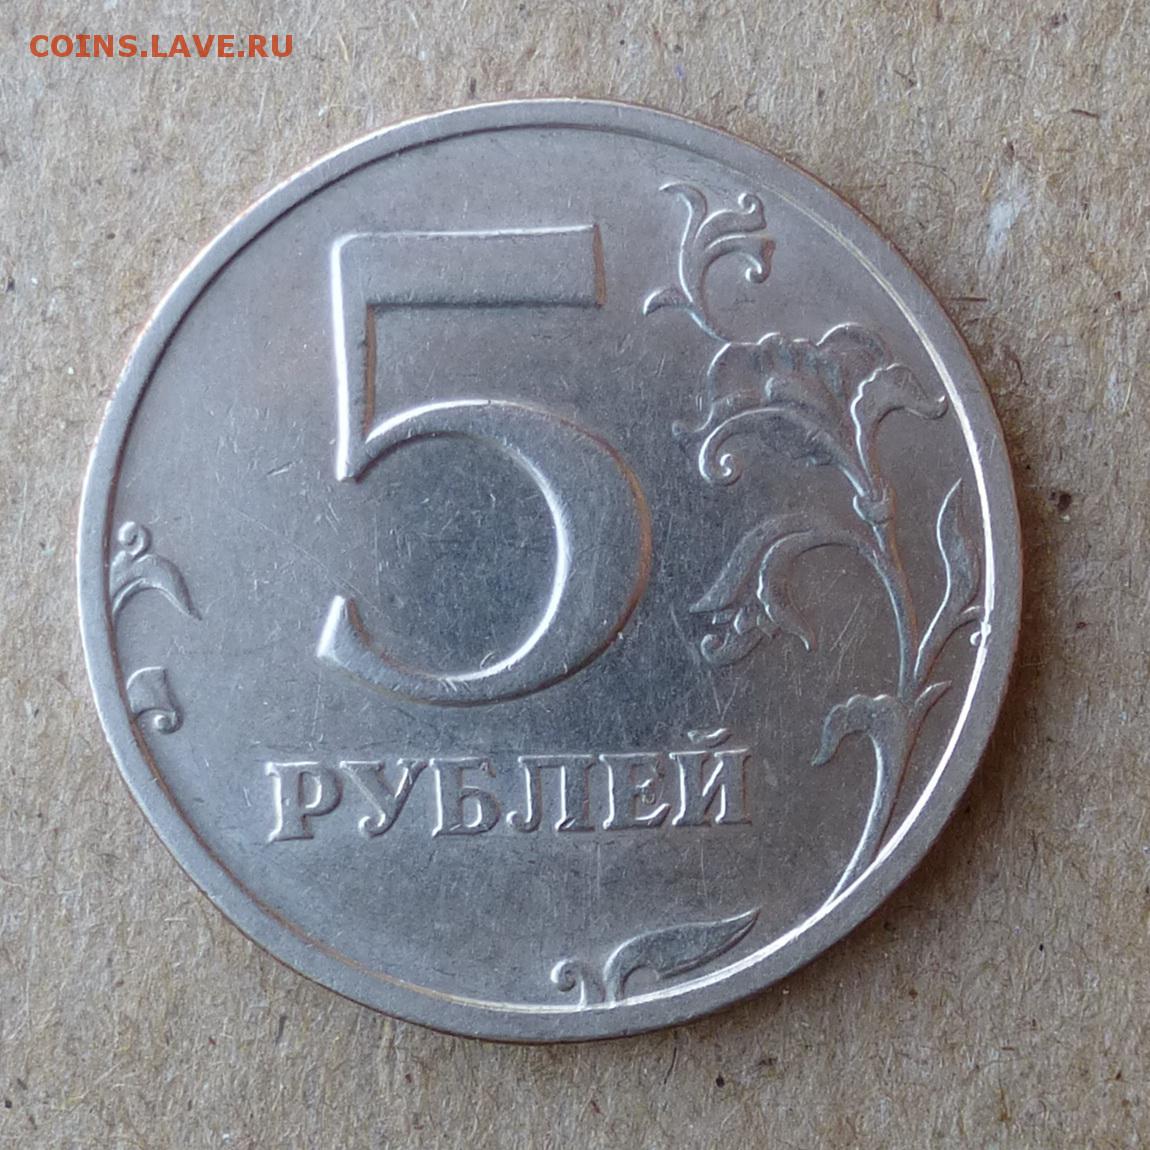 Авито 5 рублей. 1 2 5 Рублей 2003 года. Монеты 5 и 10 рублей. 5 Рублей железные. Фотография 5 рублей.